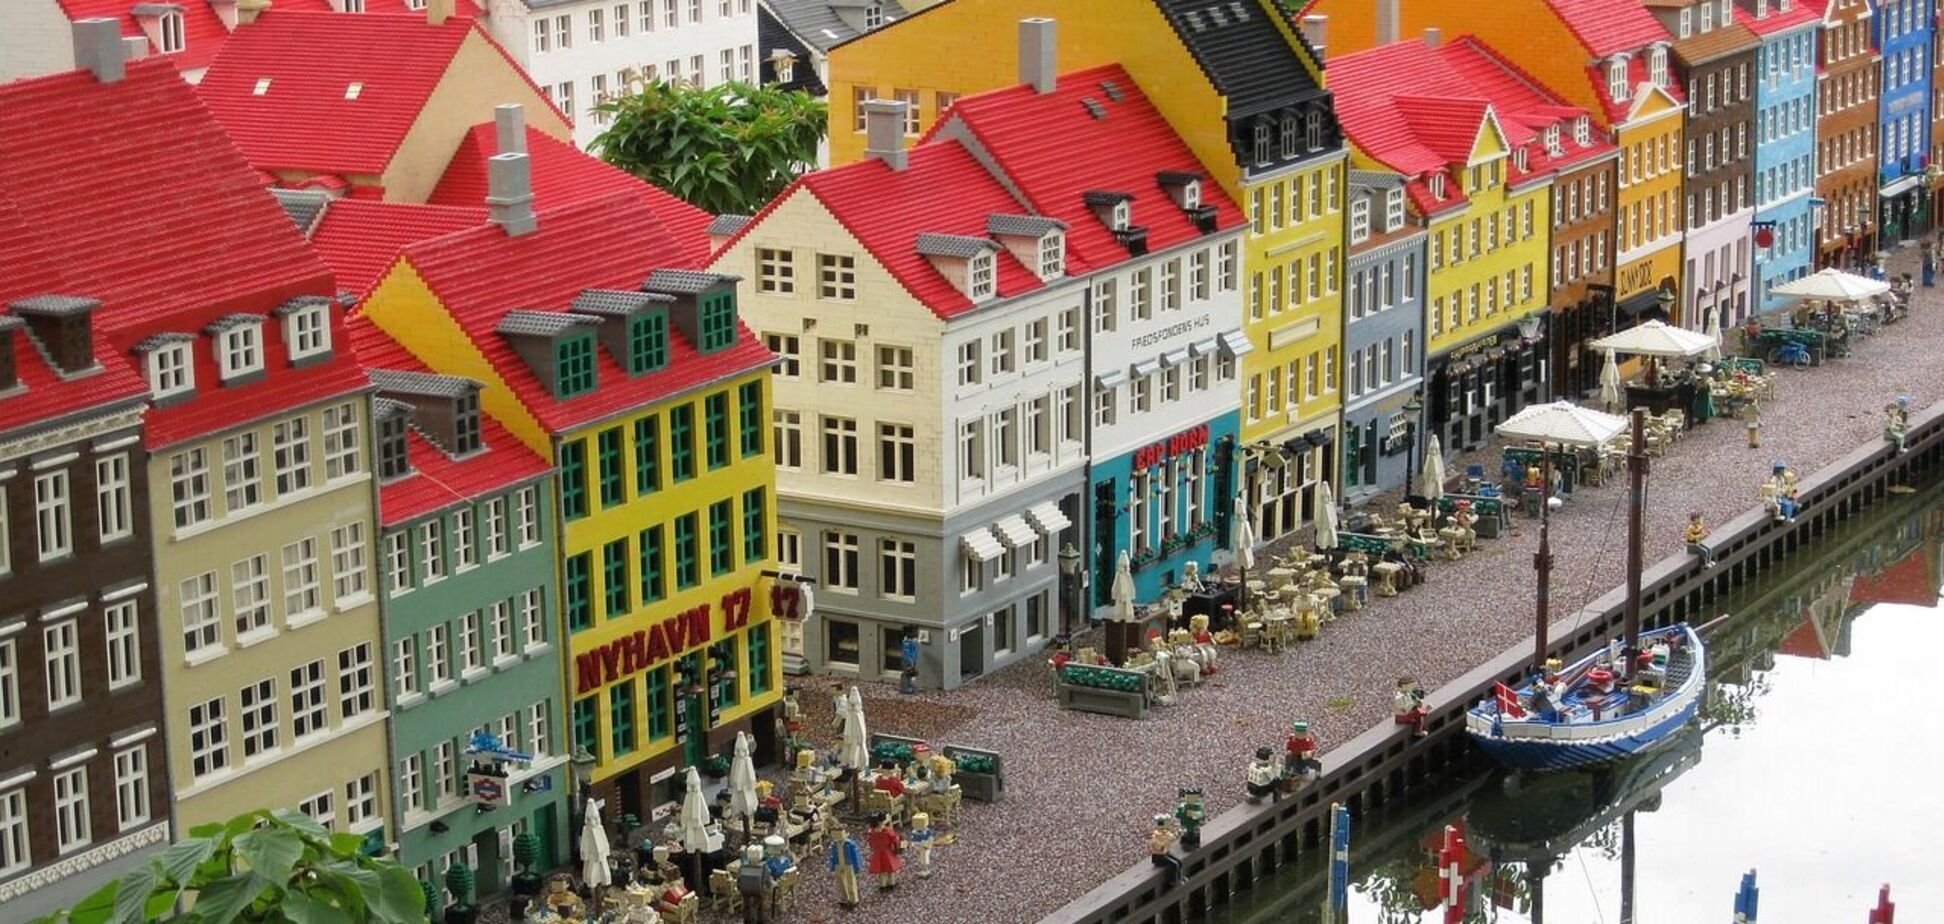 Низкие цены и меньше толпы: туристам назвали лучшее время для посещения Копенгагена в хорошую погоду.